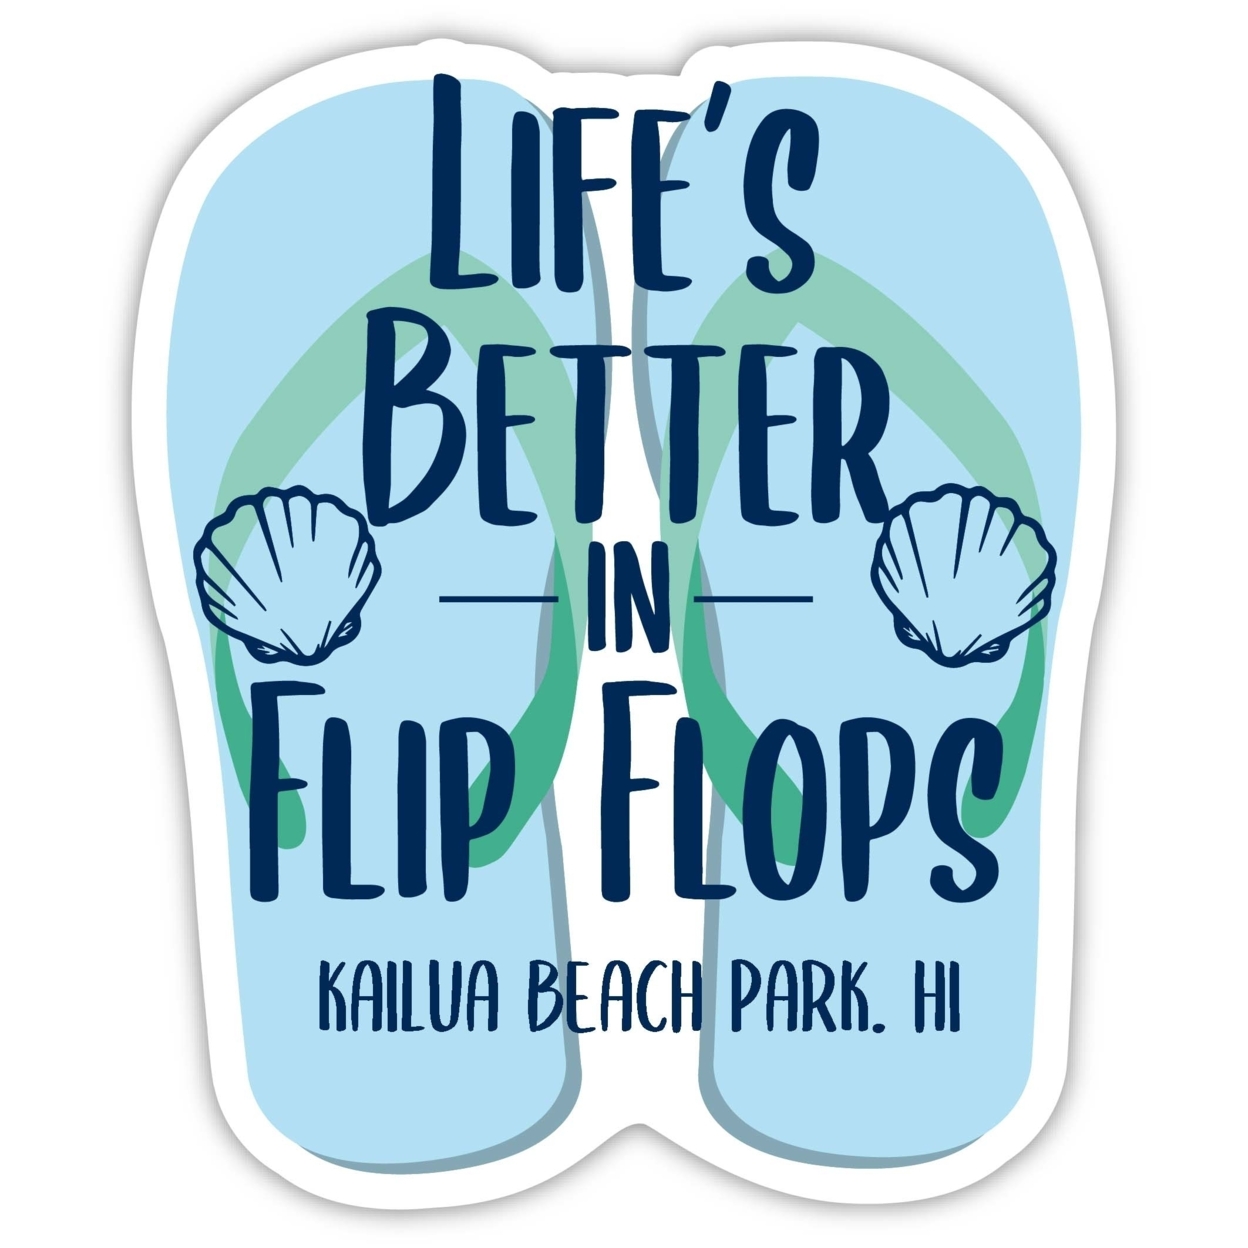 Kailua Beach Park Hawaii Souvenir 4 Inch Vinyl Decal Sticker Flip Flop Design